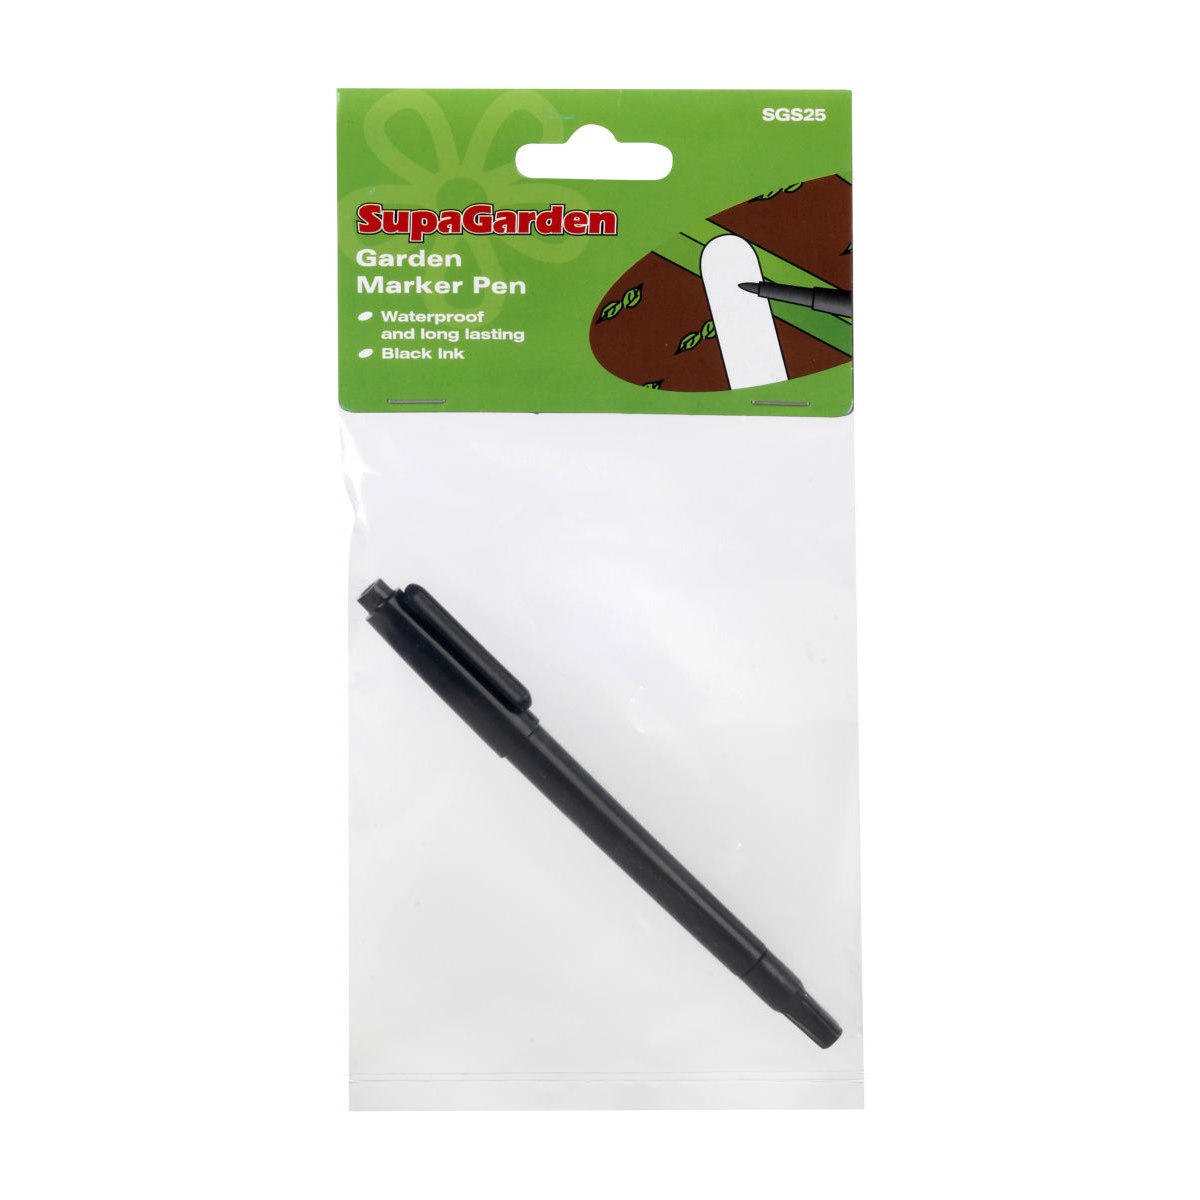 SupaGarden Garden Marker Pen